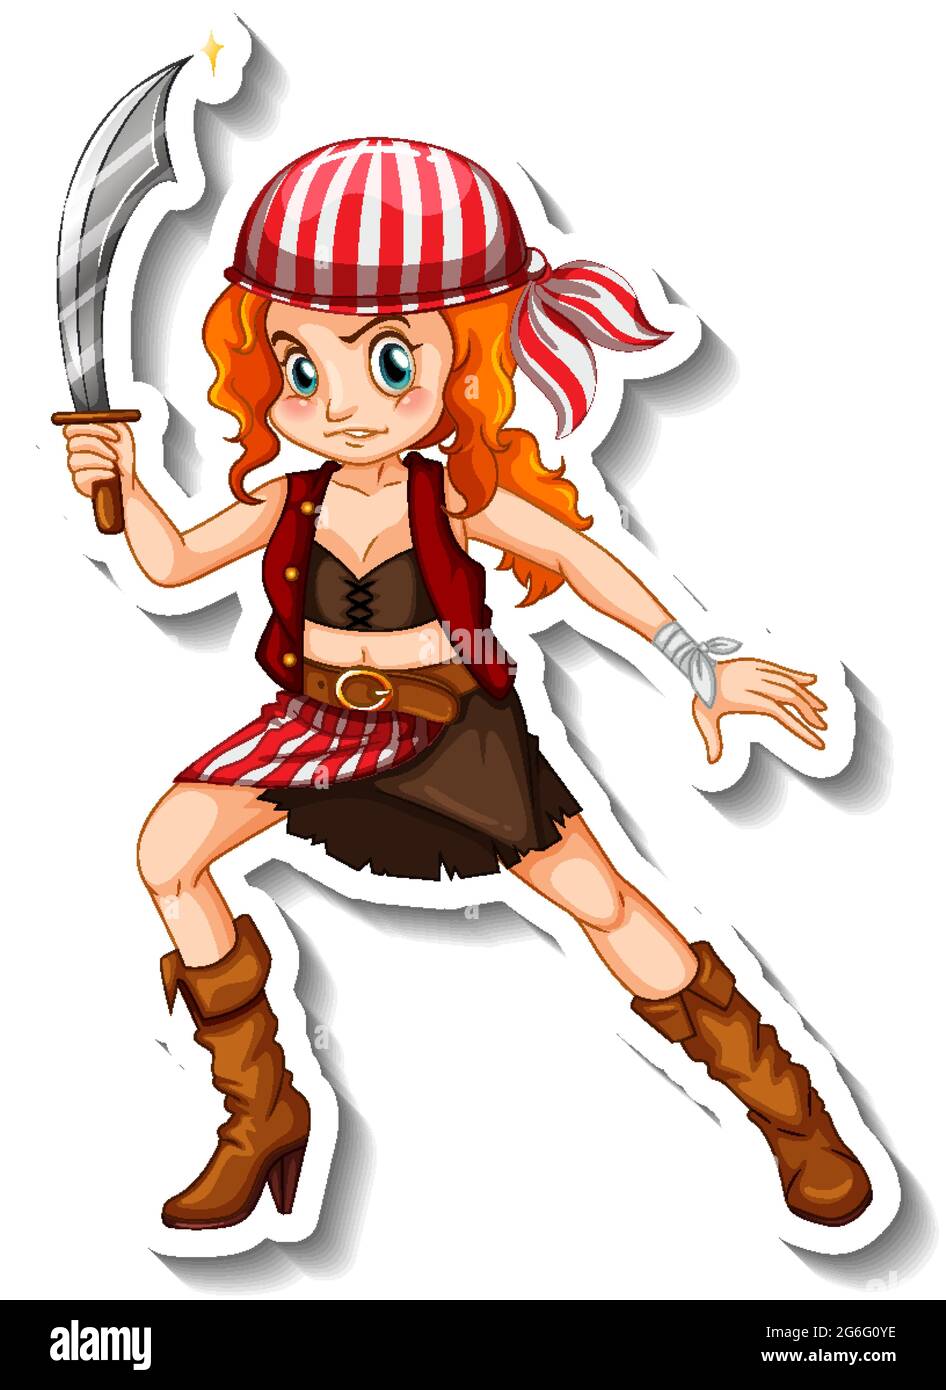 Sticker Vorlage mit einem Piraten-Mädchen Cartoon Figur isoliert  Illustration Stock-Vektorgrafik - Alamy